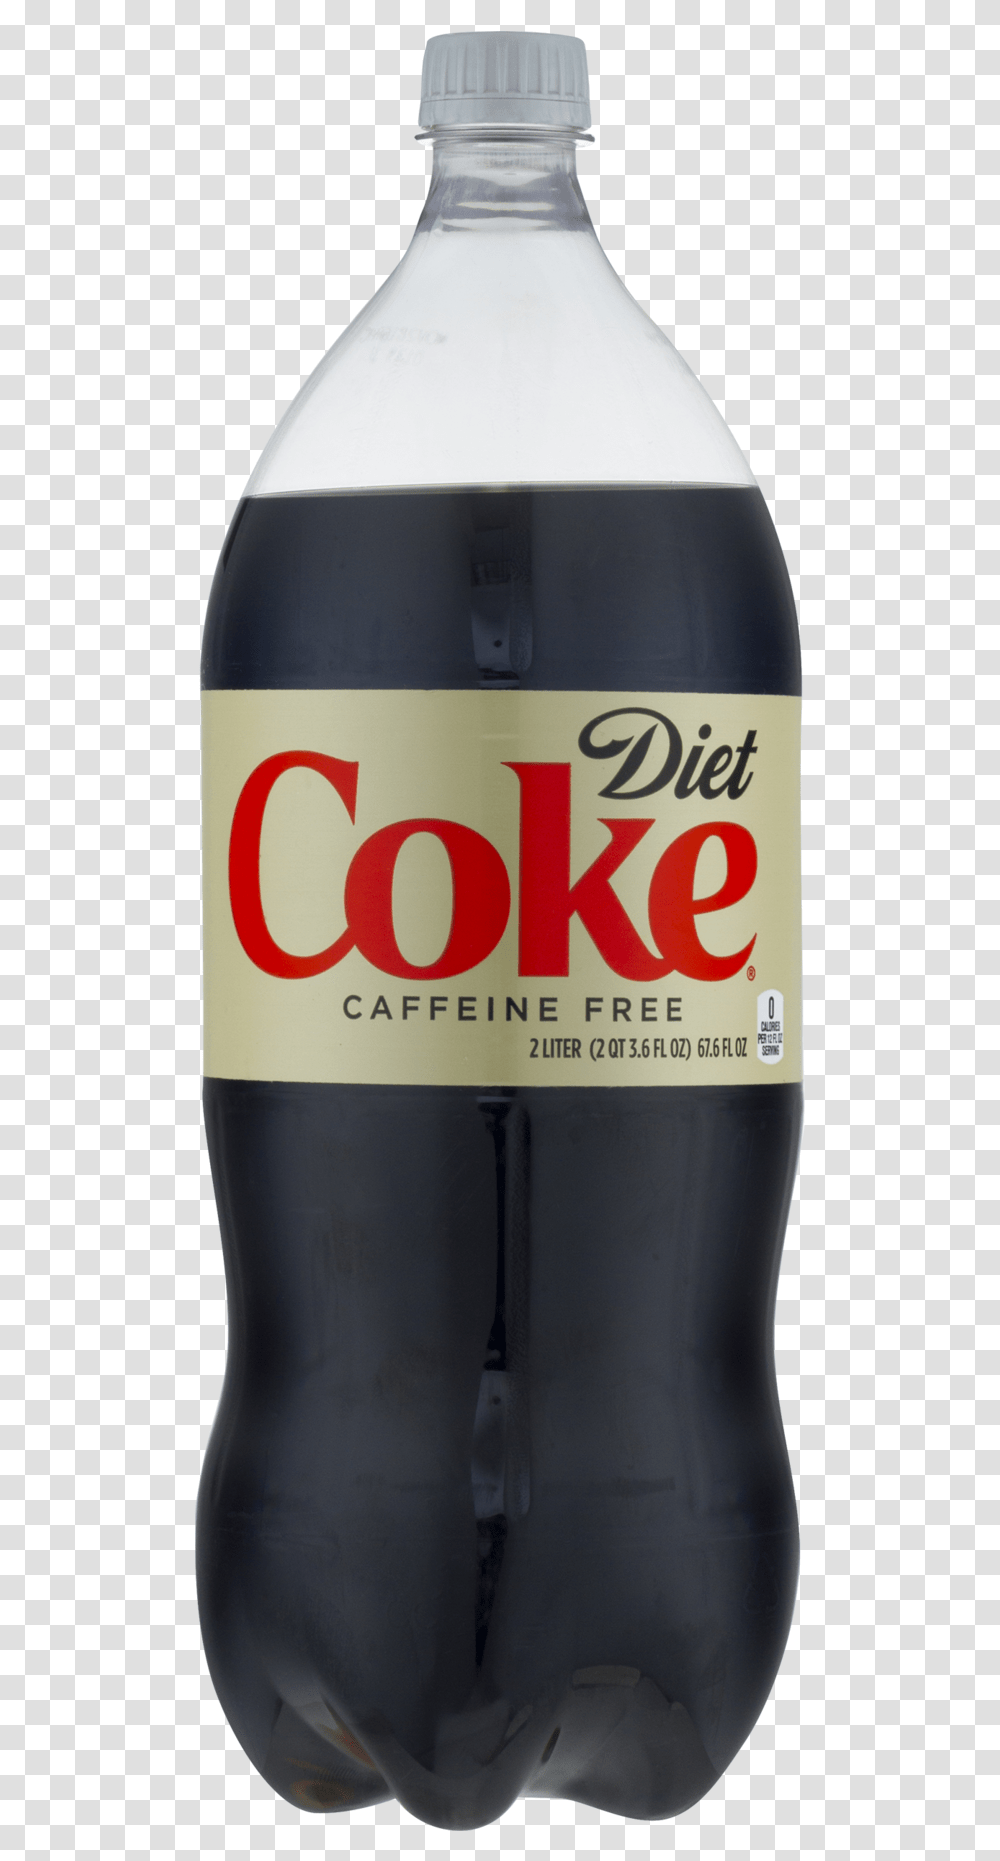 Diet Coke Bottle, Beverage, Drink, Soda, Coca Transparent Png